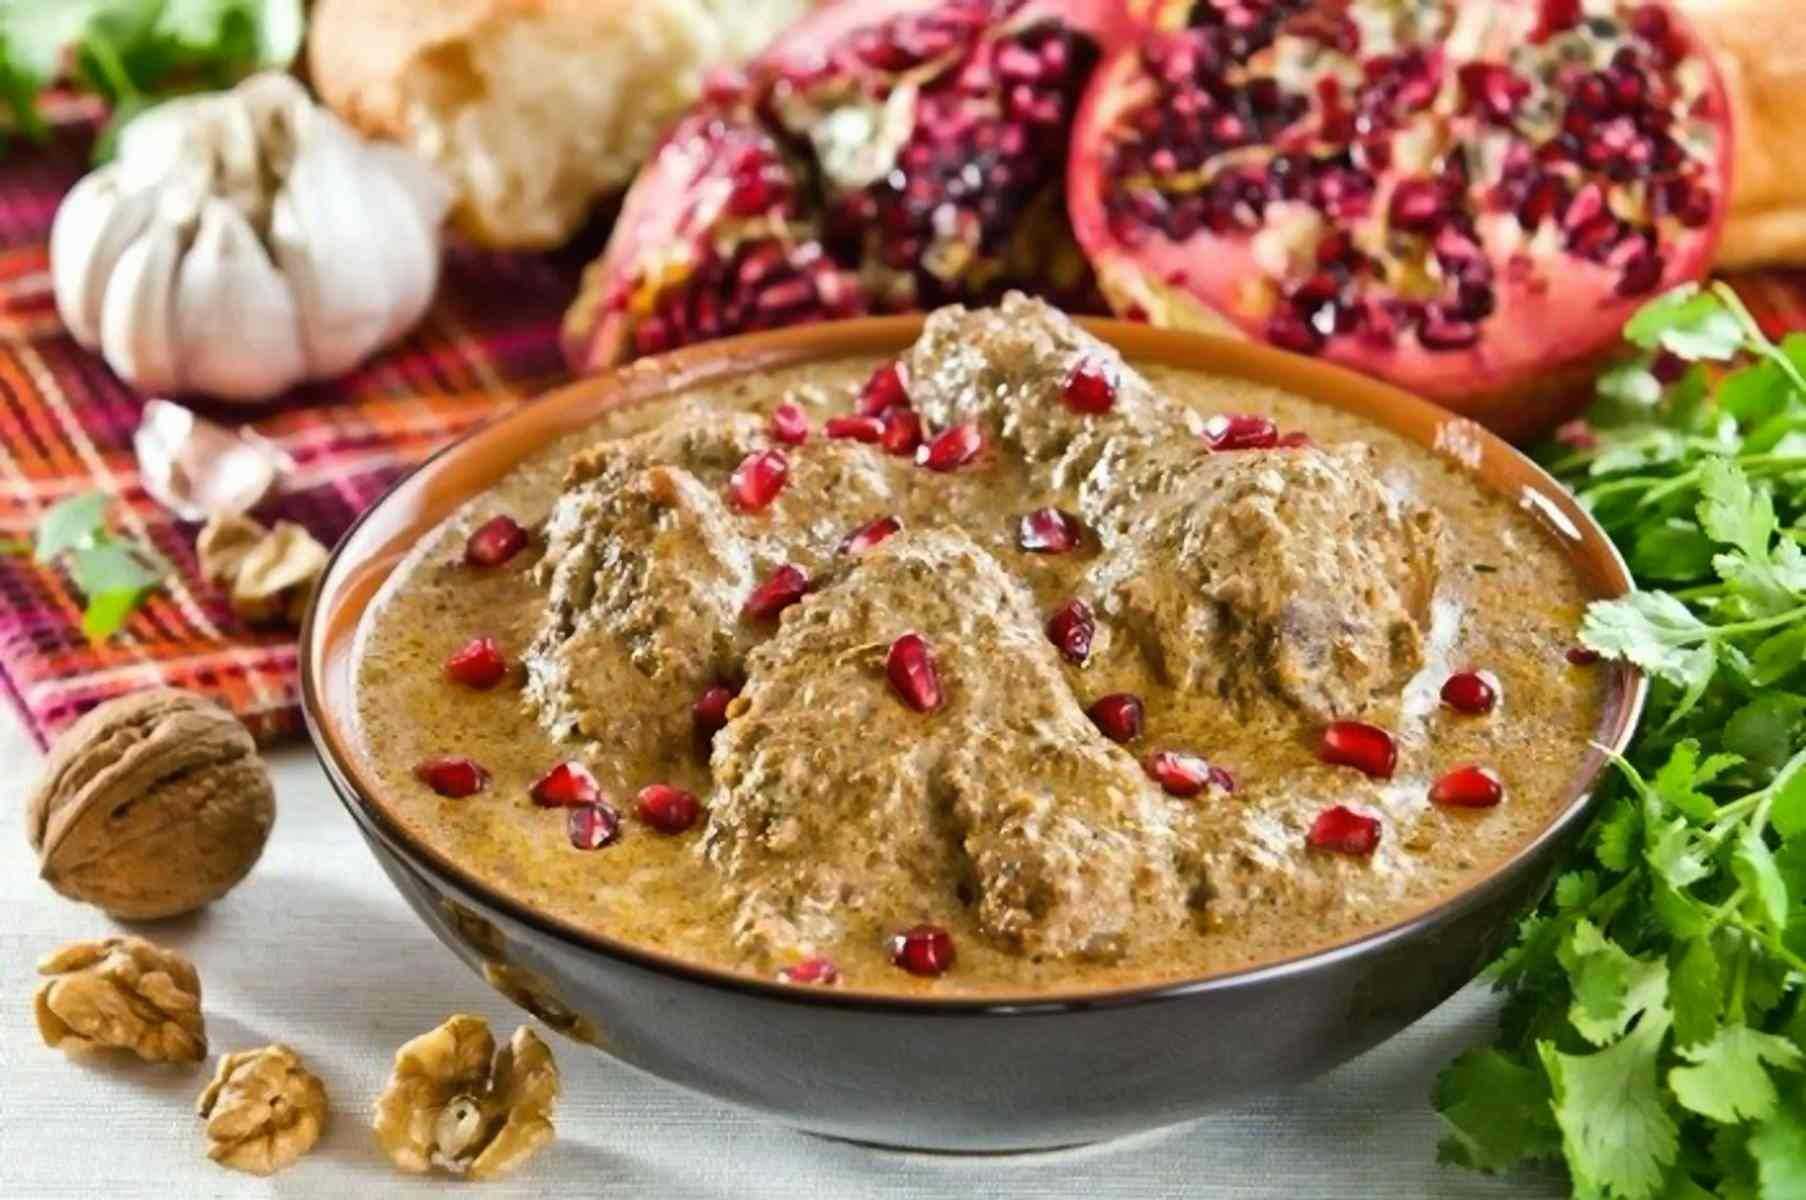 Что попробовать в грузии из еды: топ-11 национальных блюд